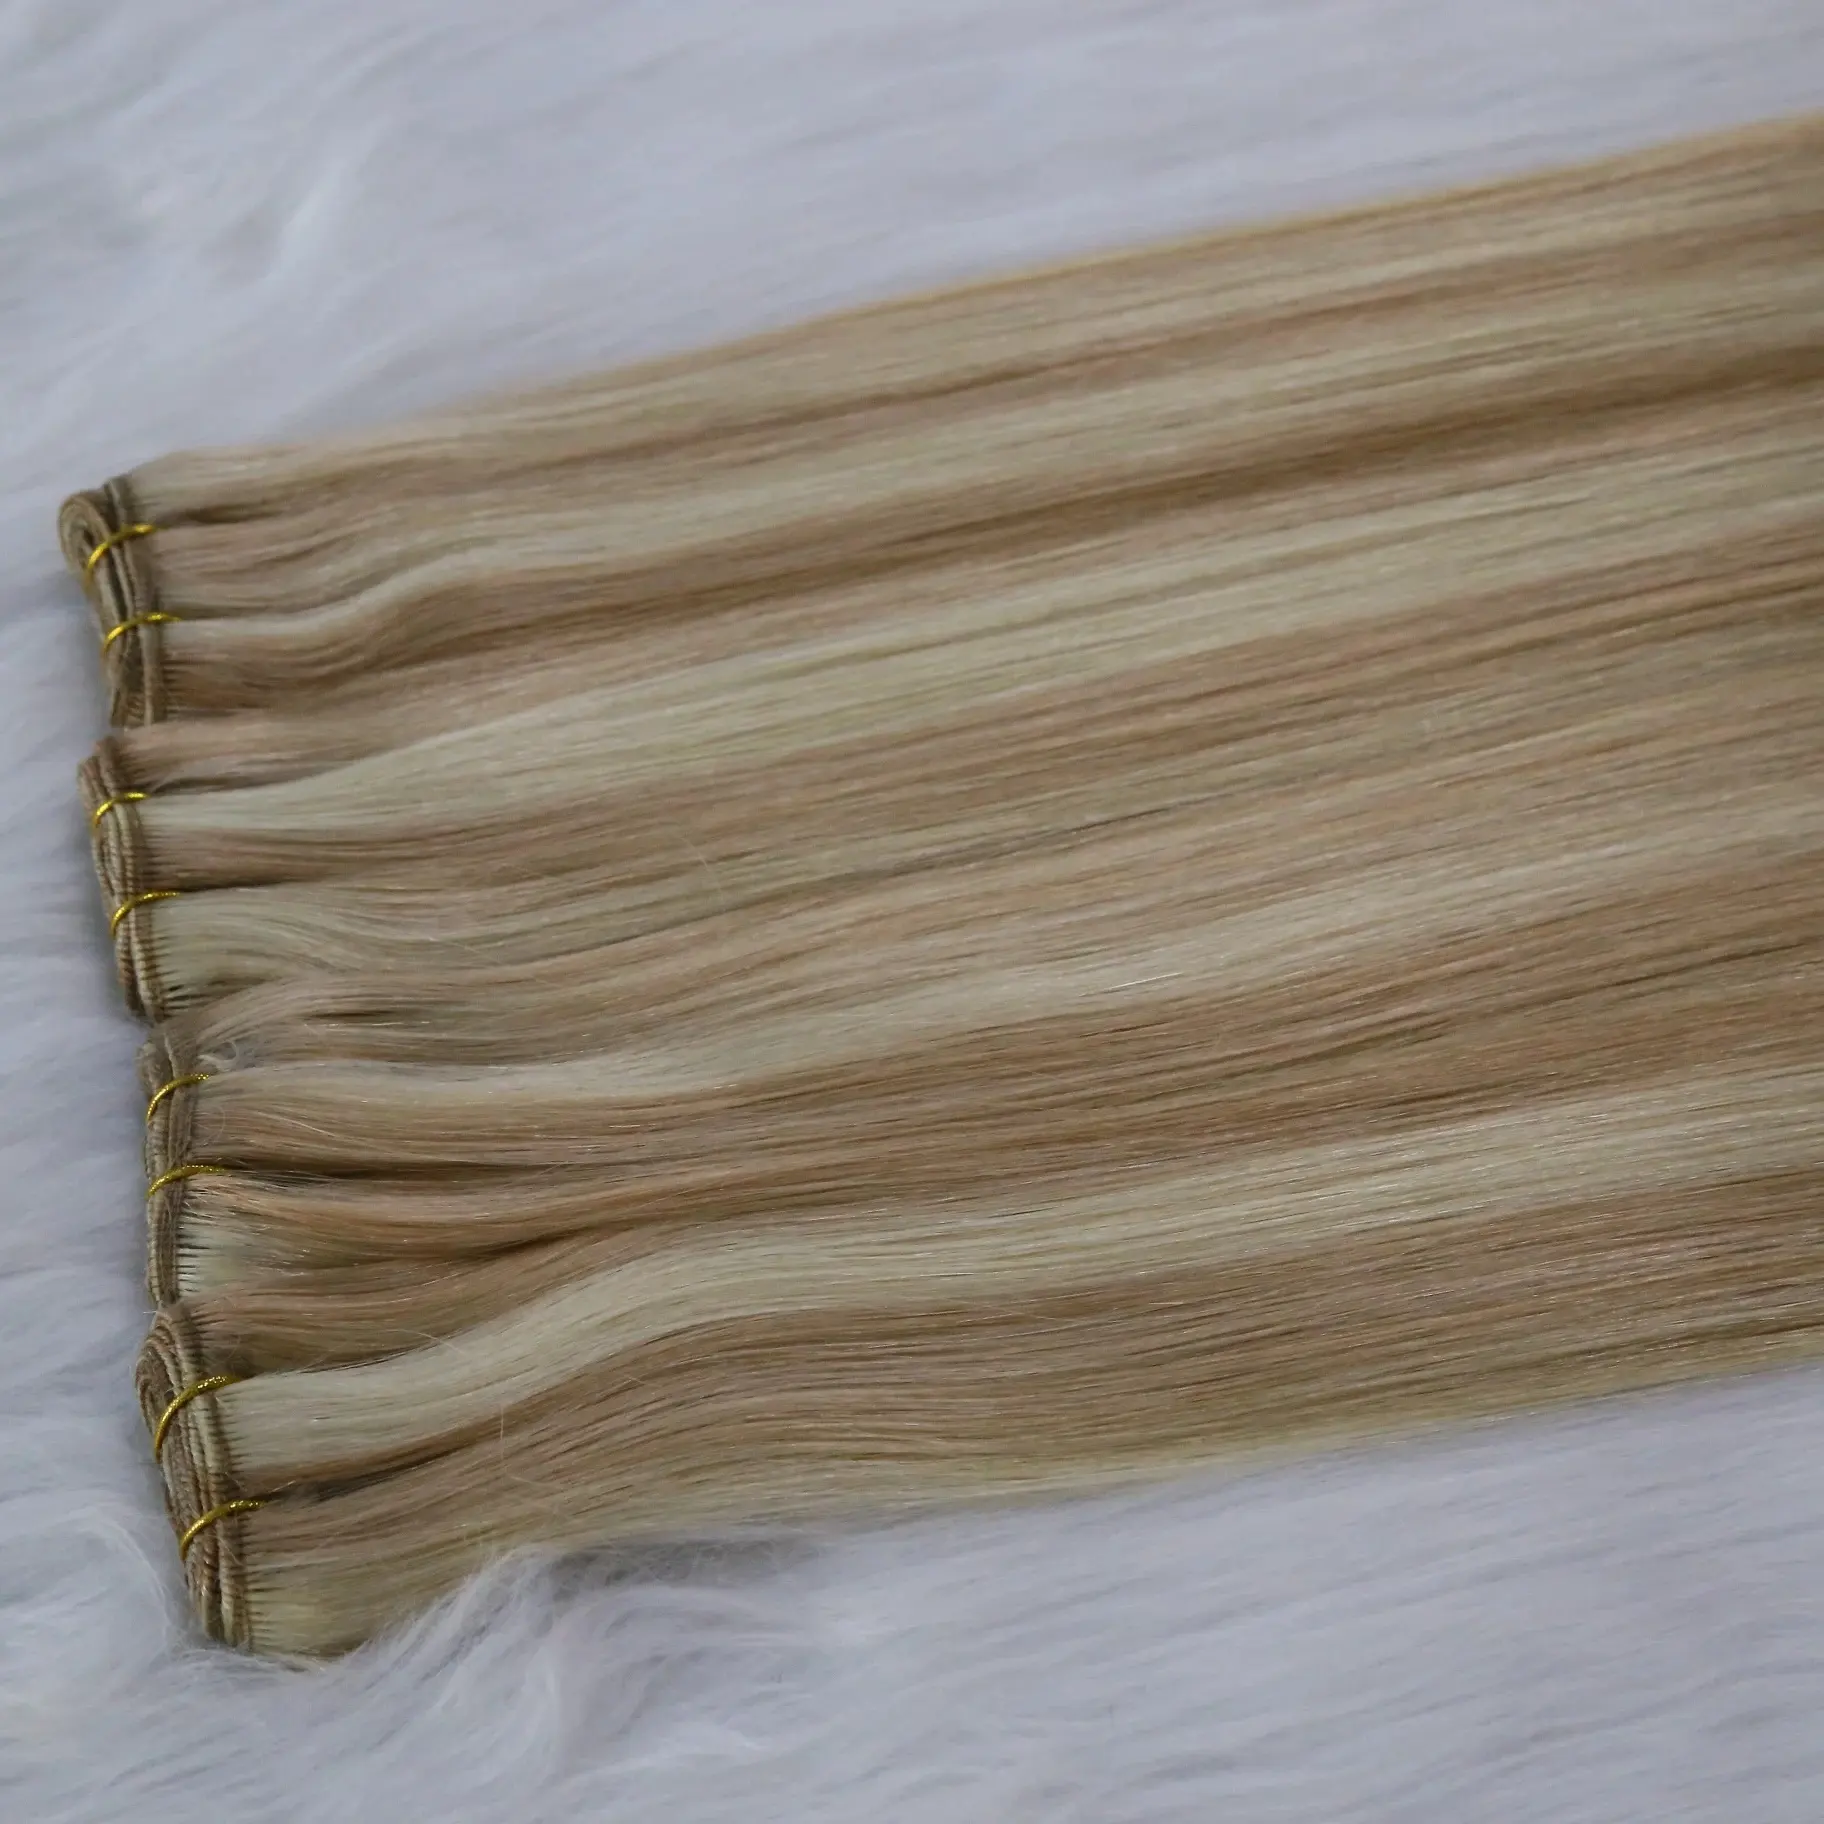 Tessitura trama capelli macchina per cucire trama molto spessa capelli umani estensione #27 Highlight #613 colore dritto per grossista